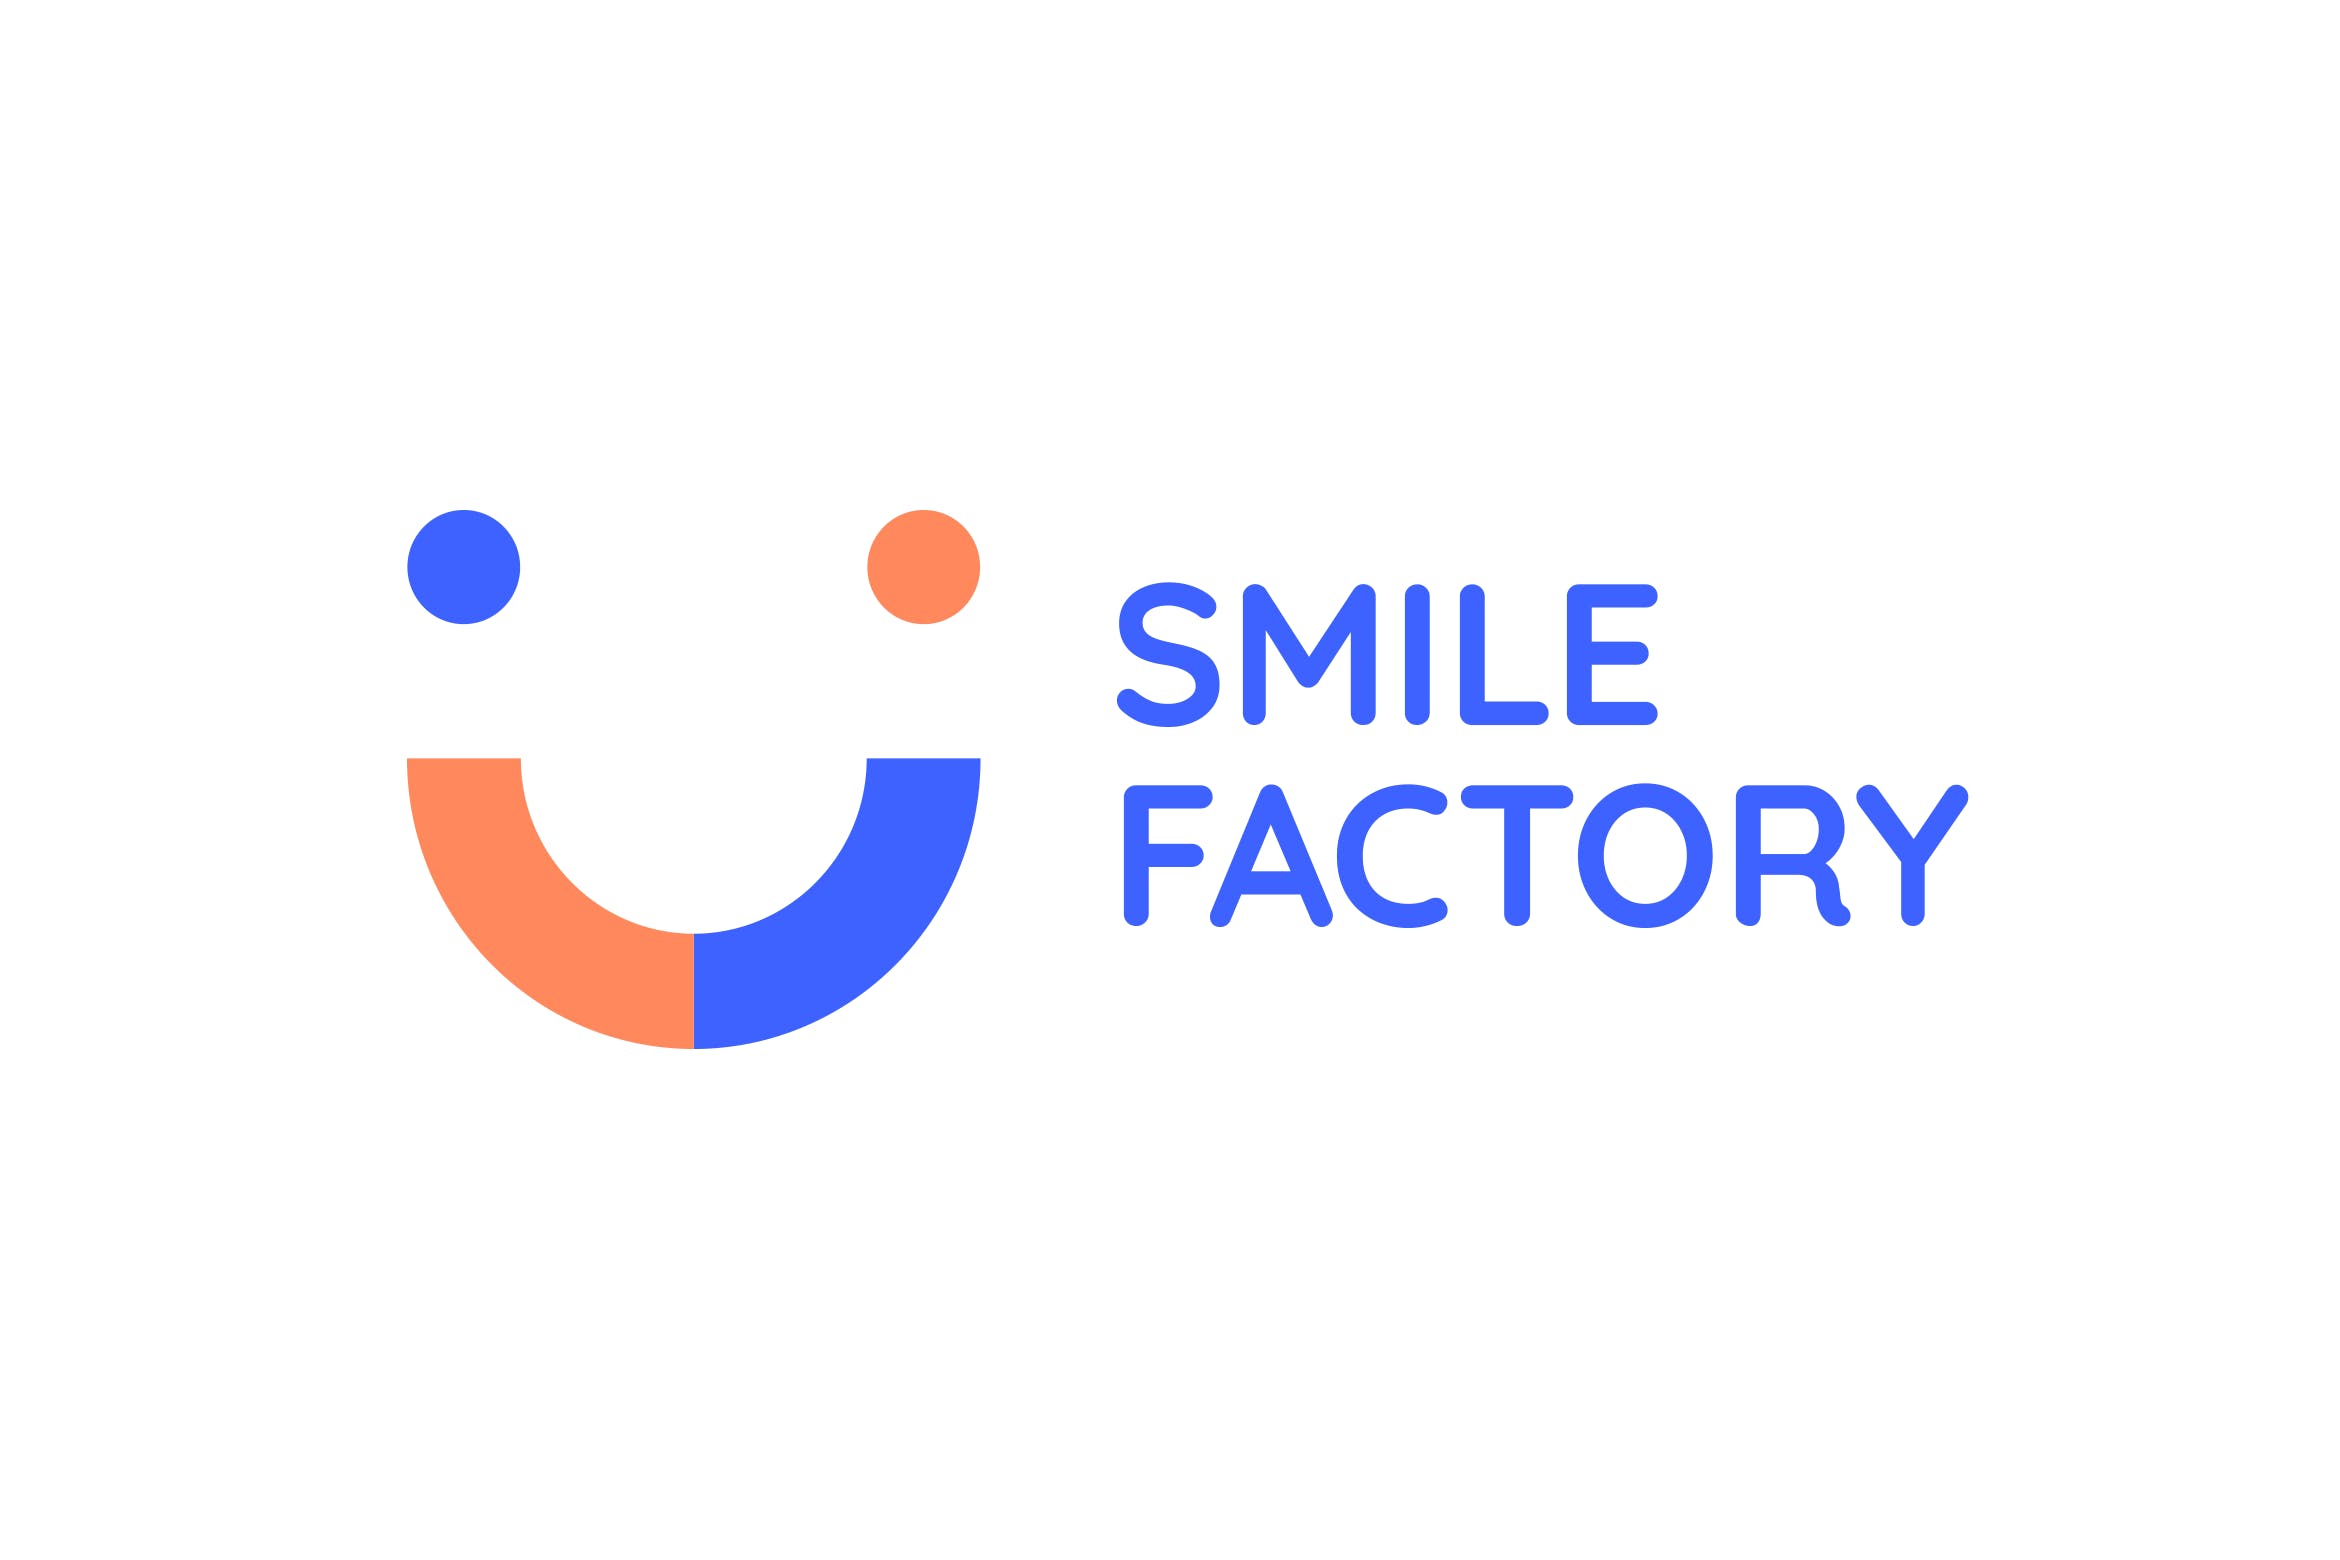 笑脸几何图形Logo设计第一素材精选模板 Smile Factory Logo插图